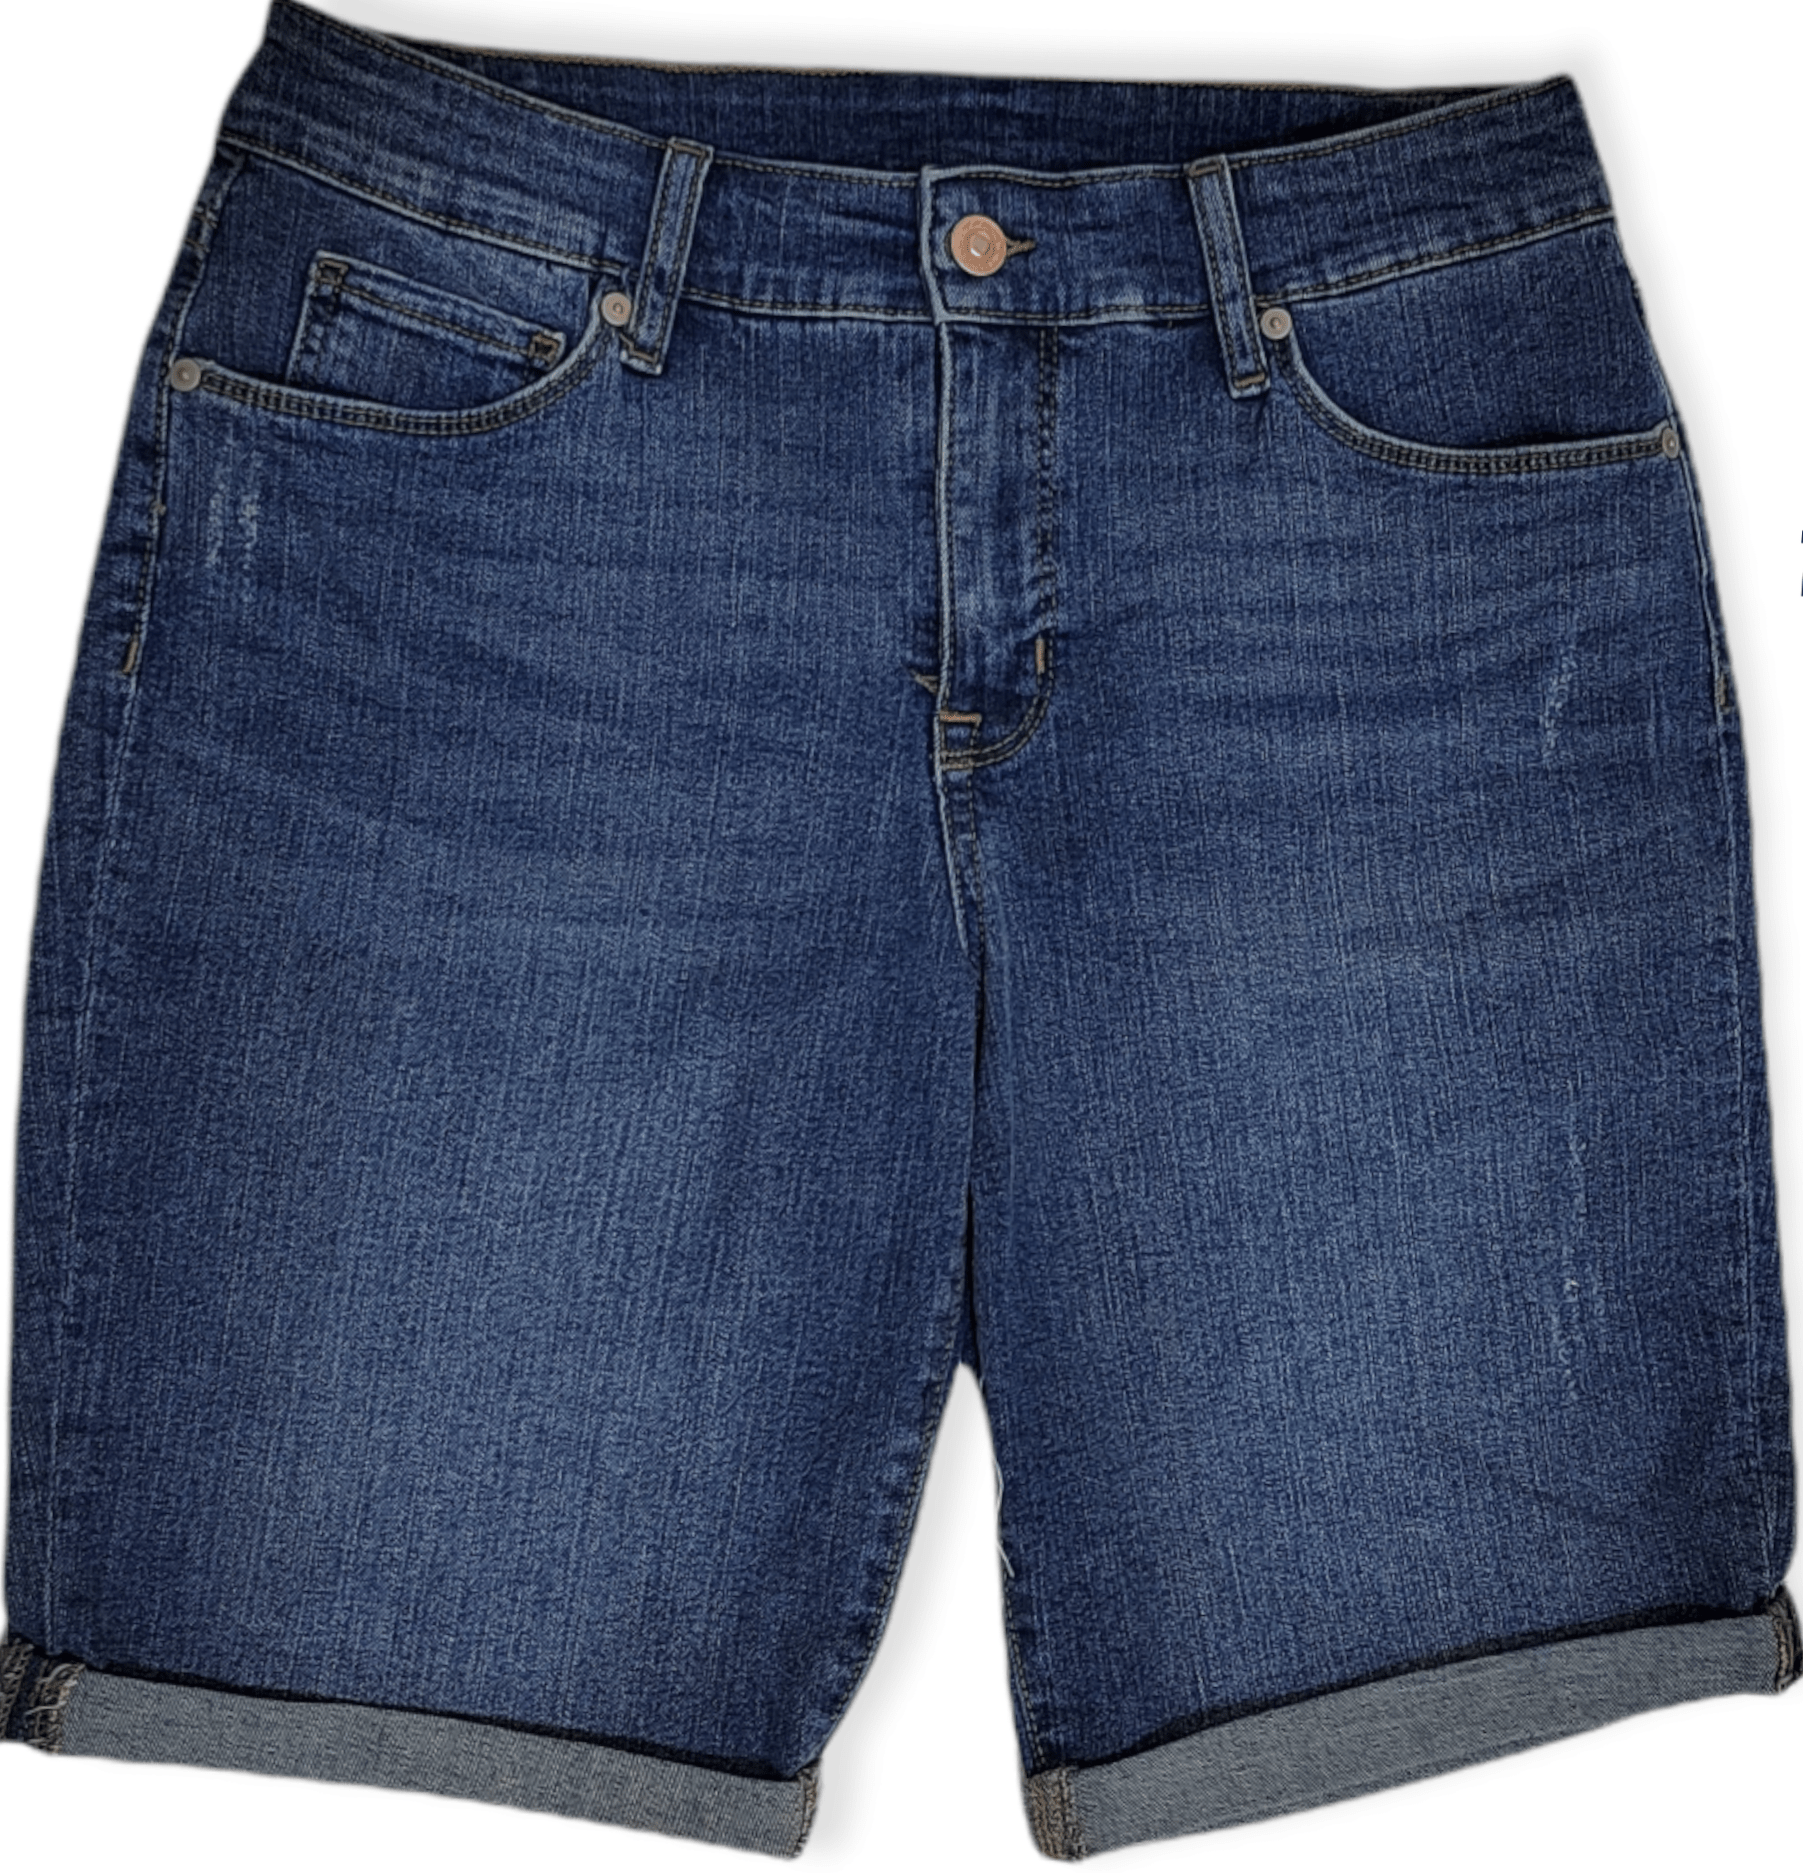 ElOutlet - Summer Women Women Shorts Women Shorts - Long (Blue)